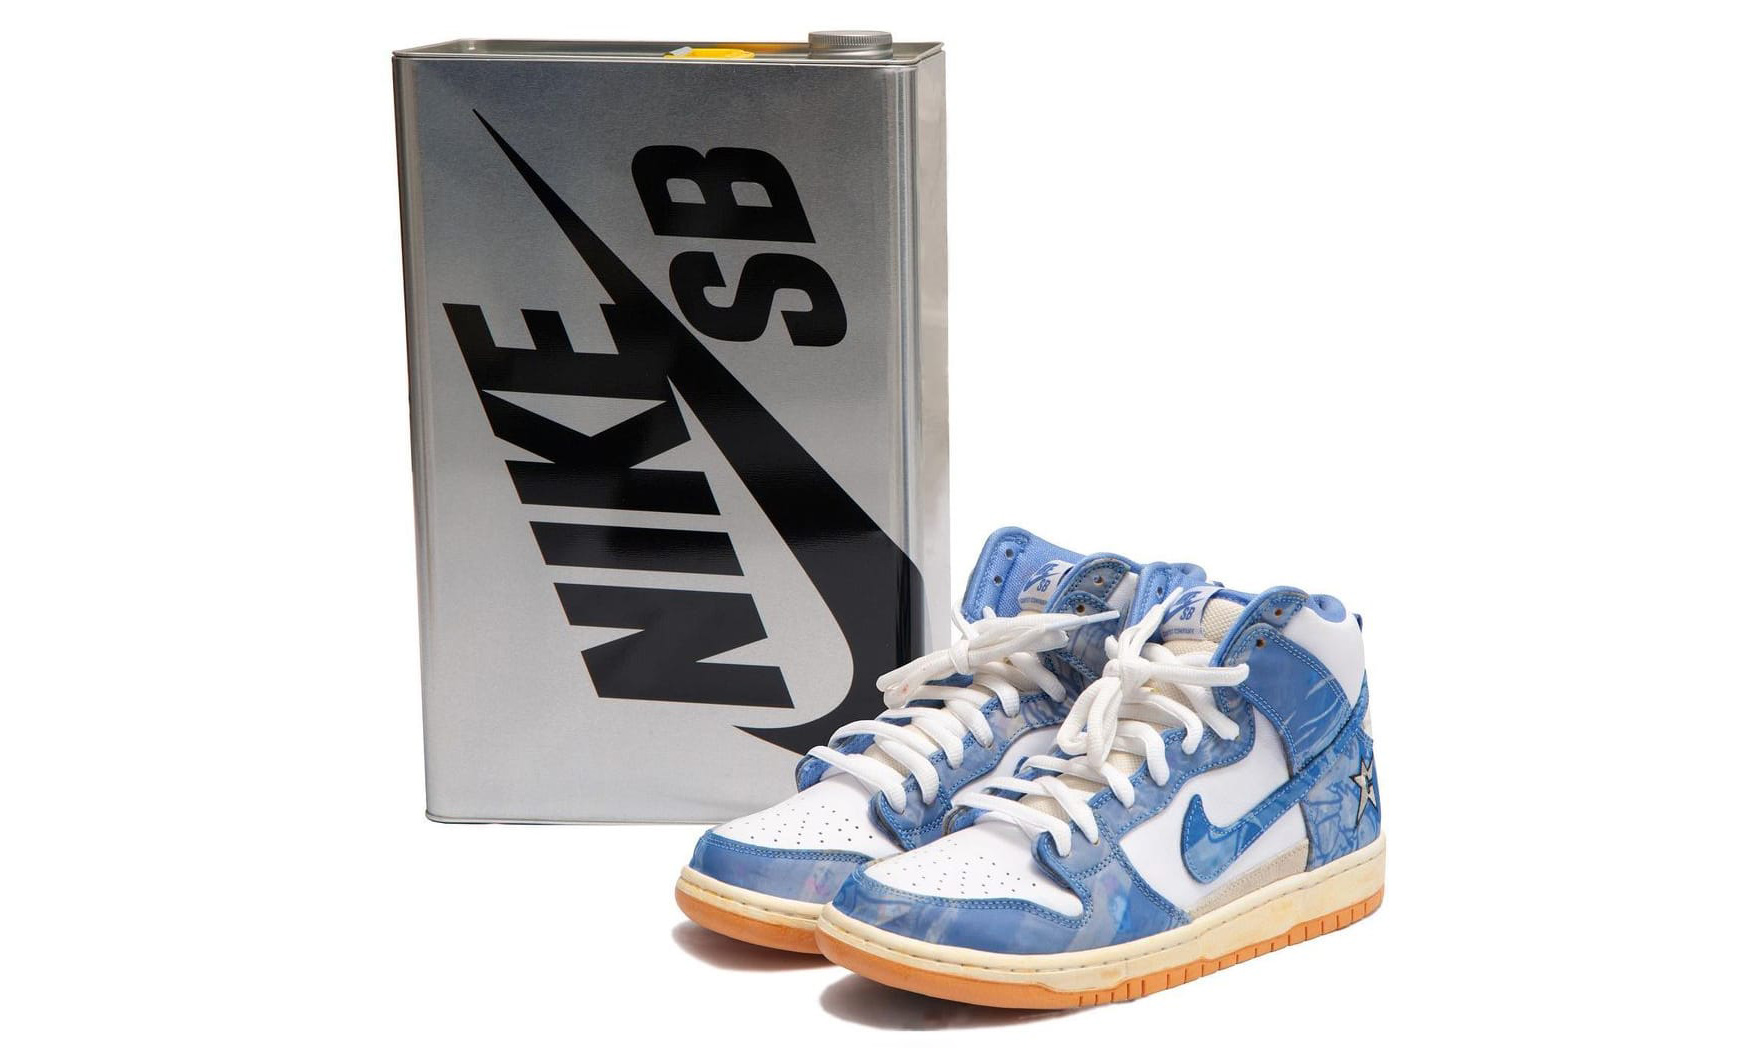 Carpet Company x Nike SB Dunk High 特殊鞋盒版本开启抽签